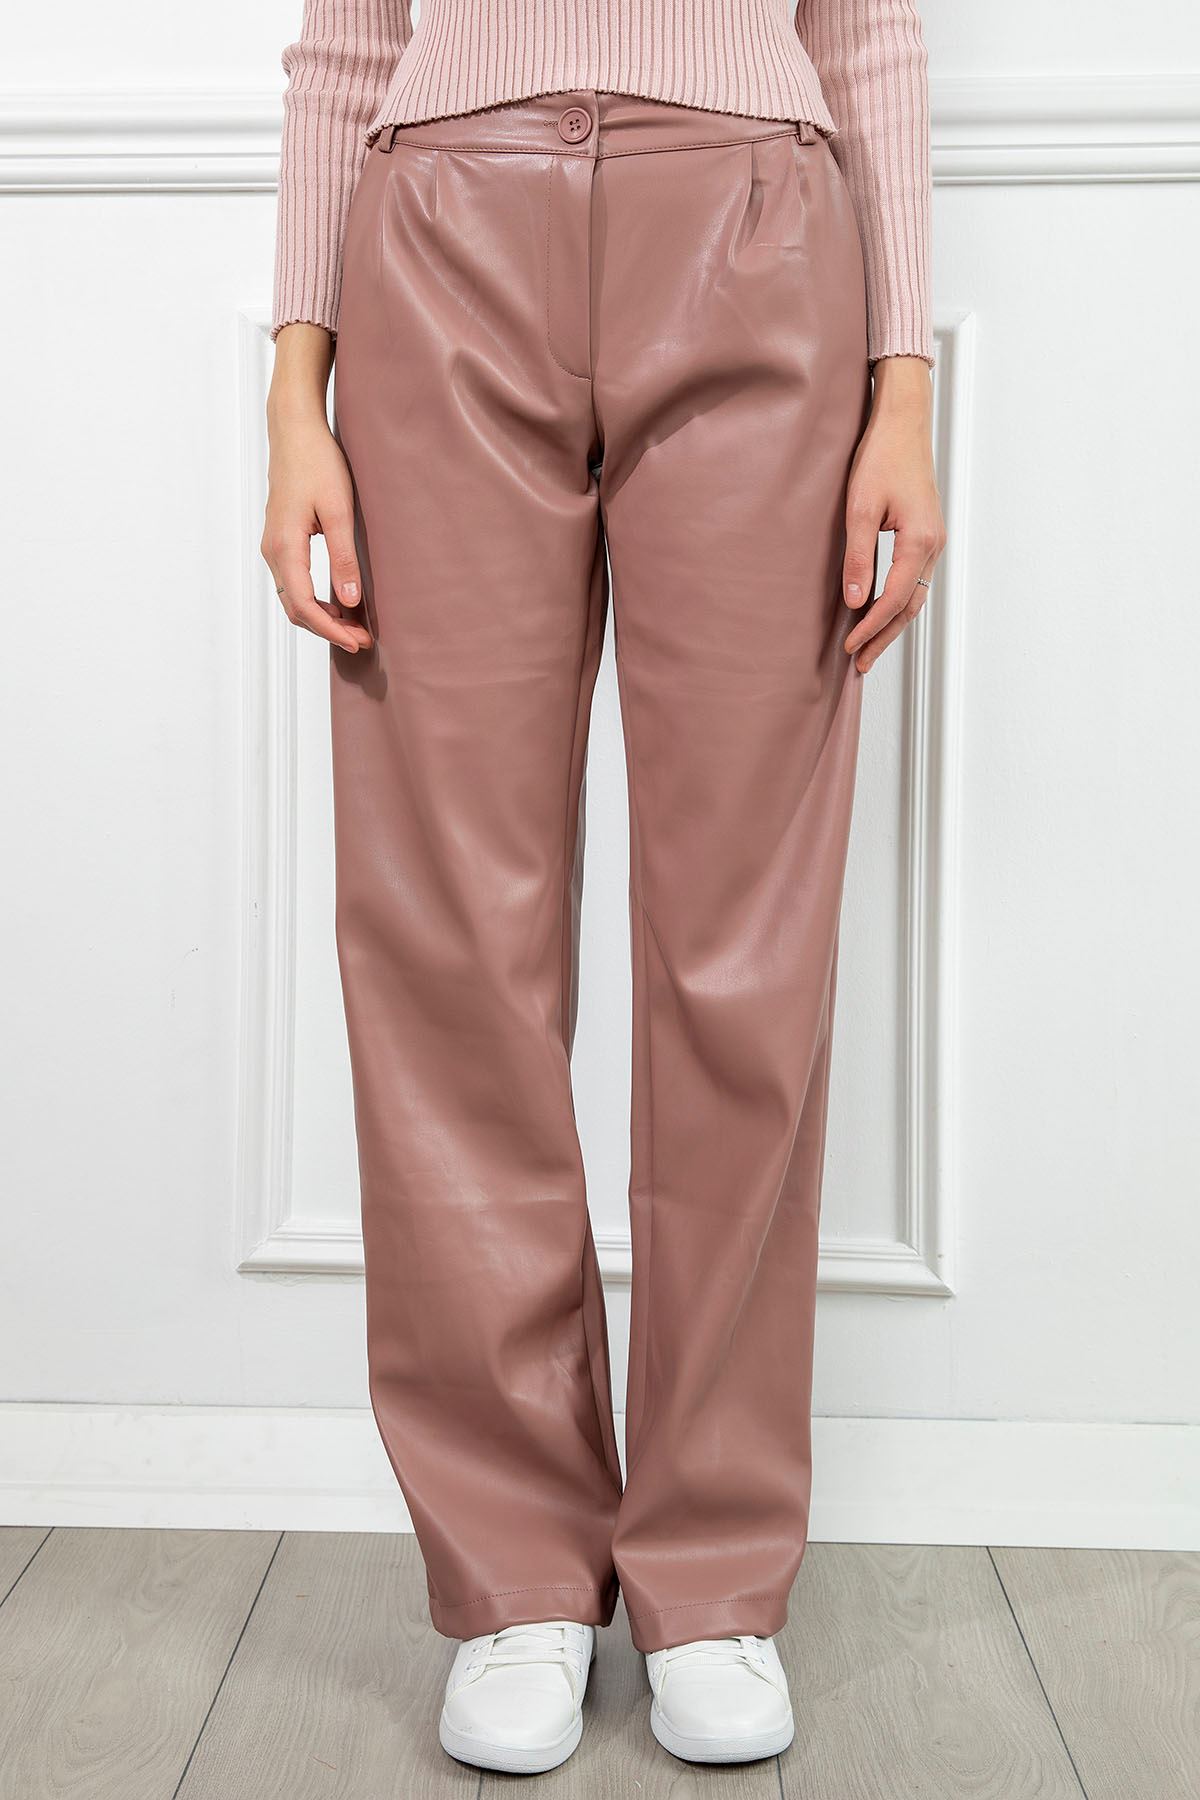 Zara Leather Fabric Long Wide Fit Wide Leg Women'S Trouser - Light Pink